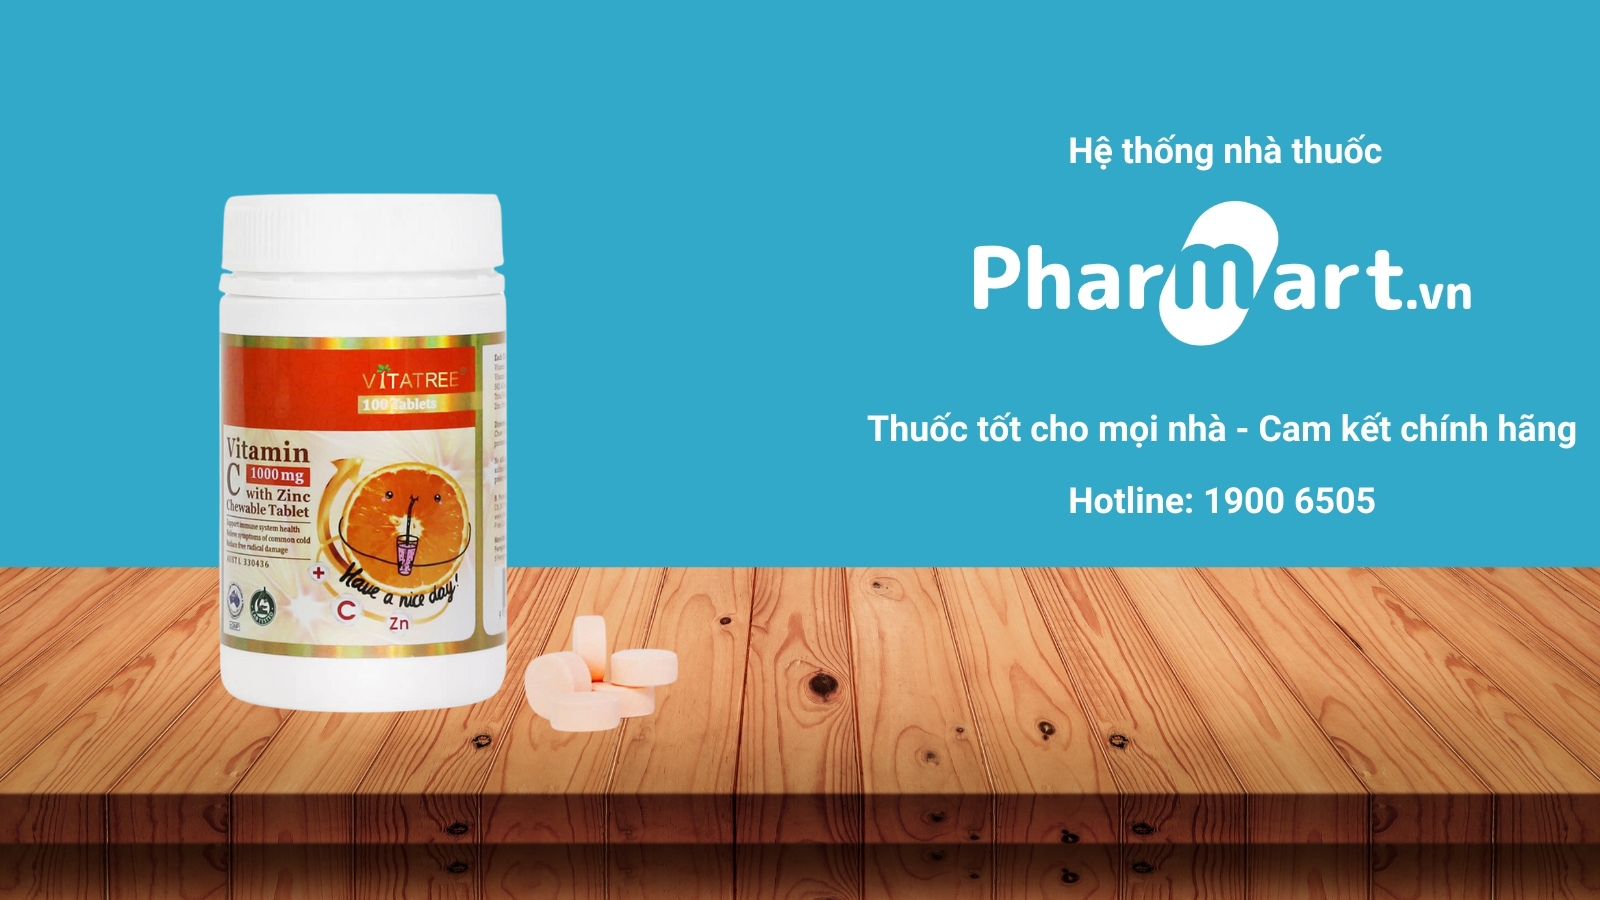 Mua ngay Vitatree Vitamin C 1000 mg with Zinc chính hãng tại Pharmart.vn.